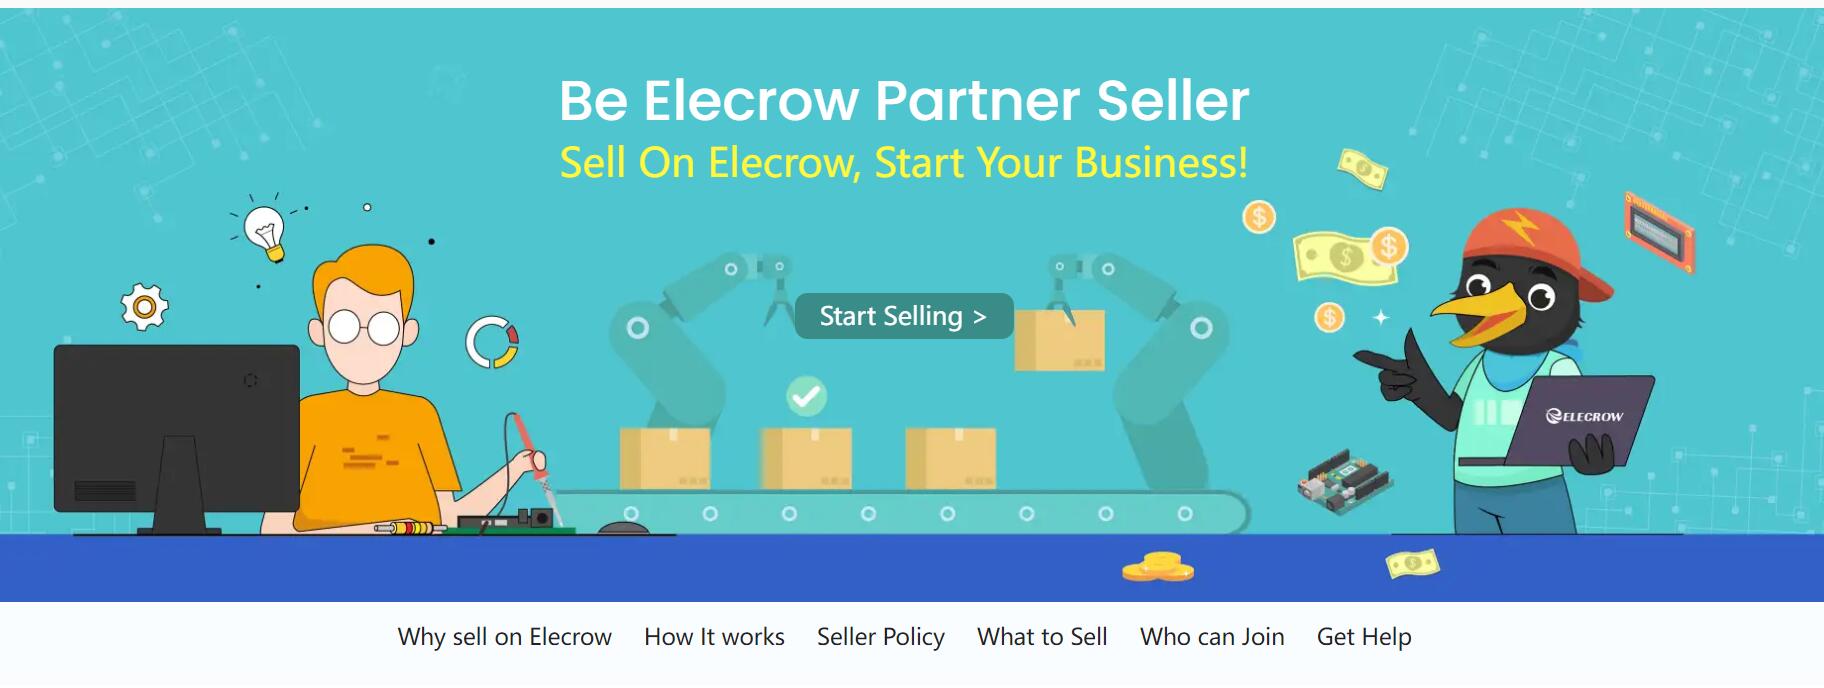 Join Elecrow as a partner seller!